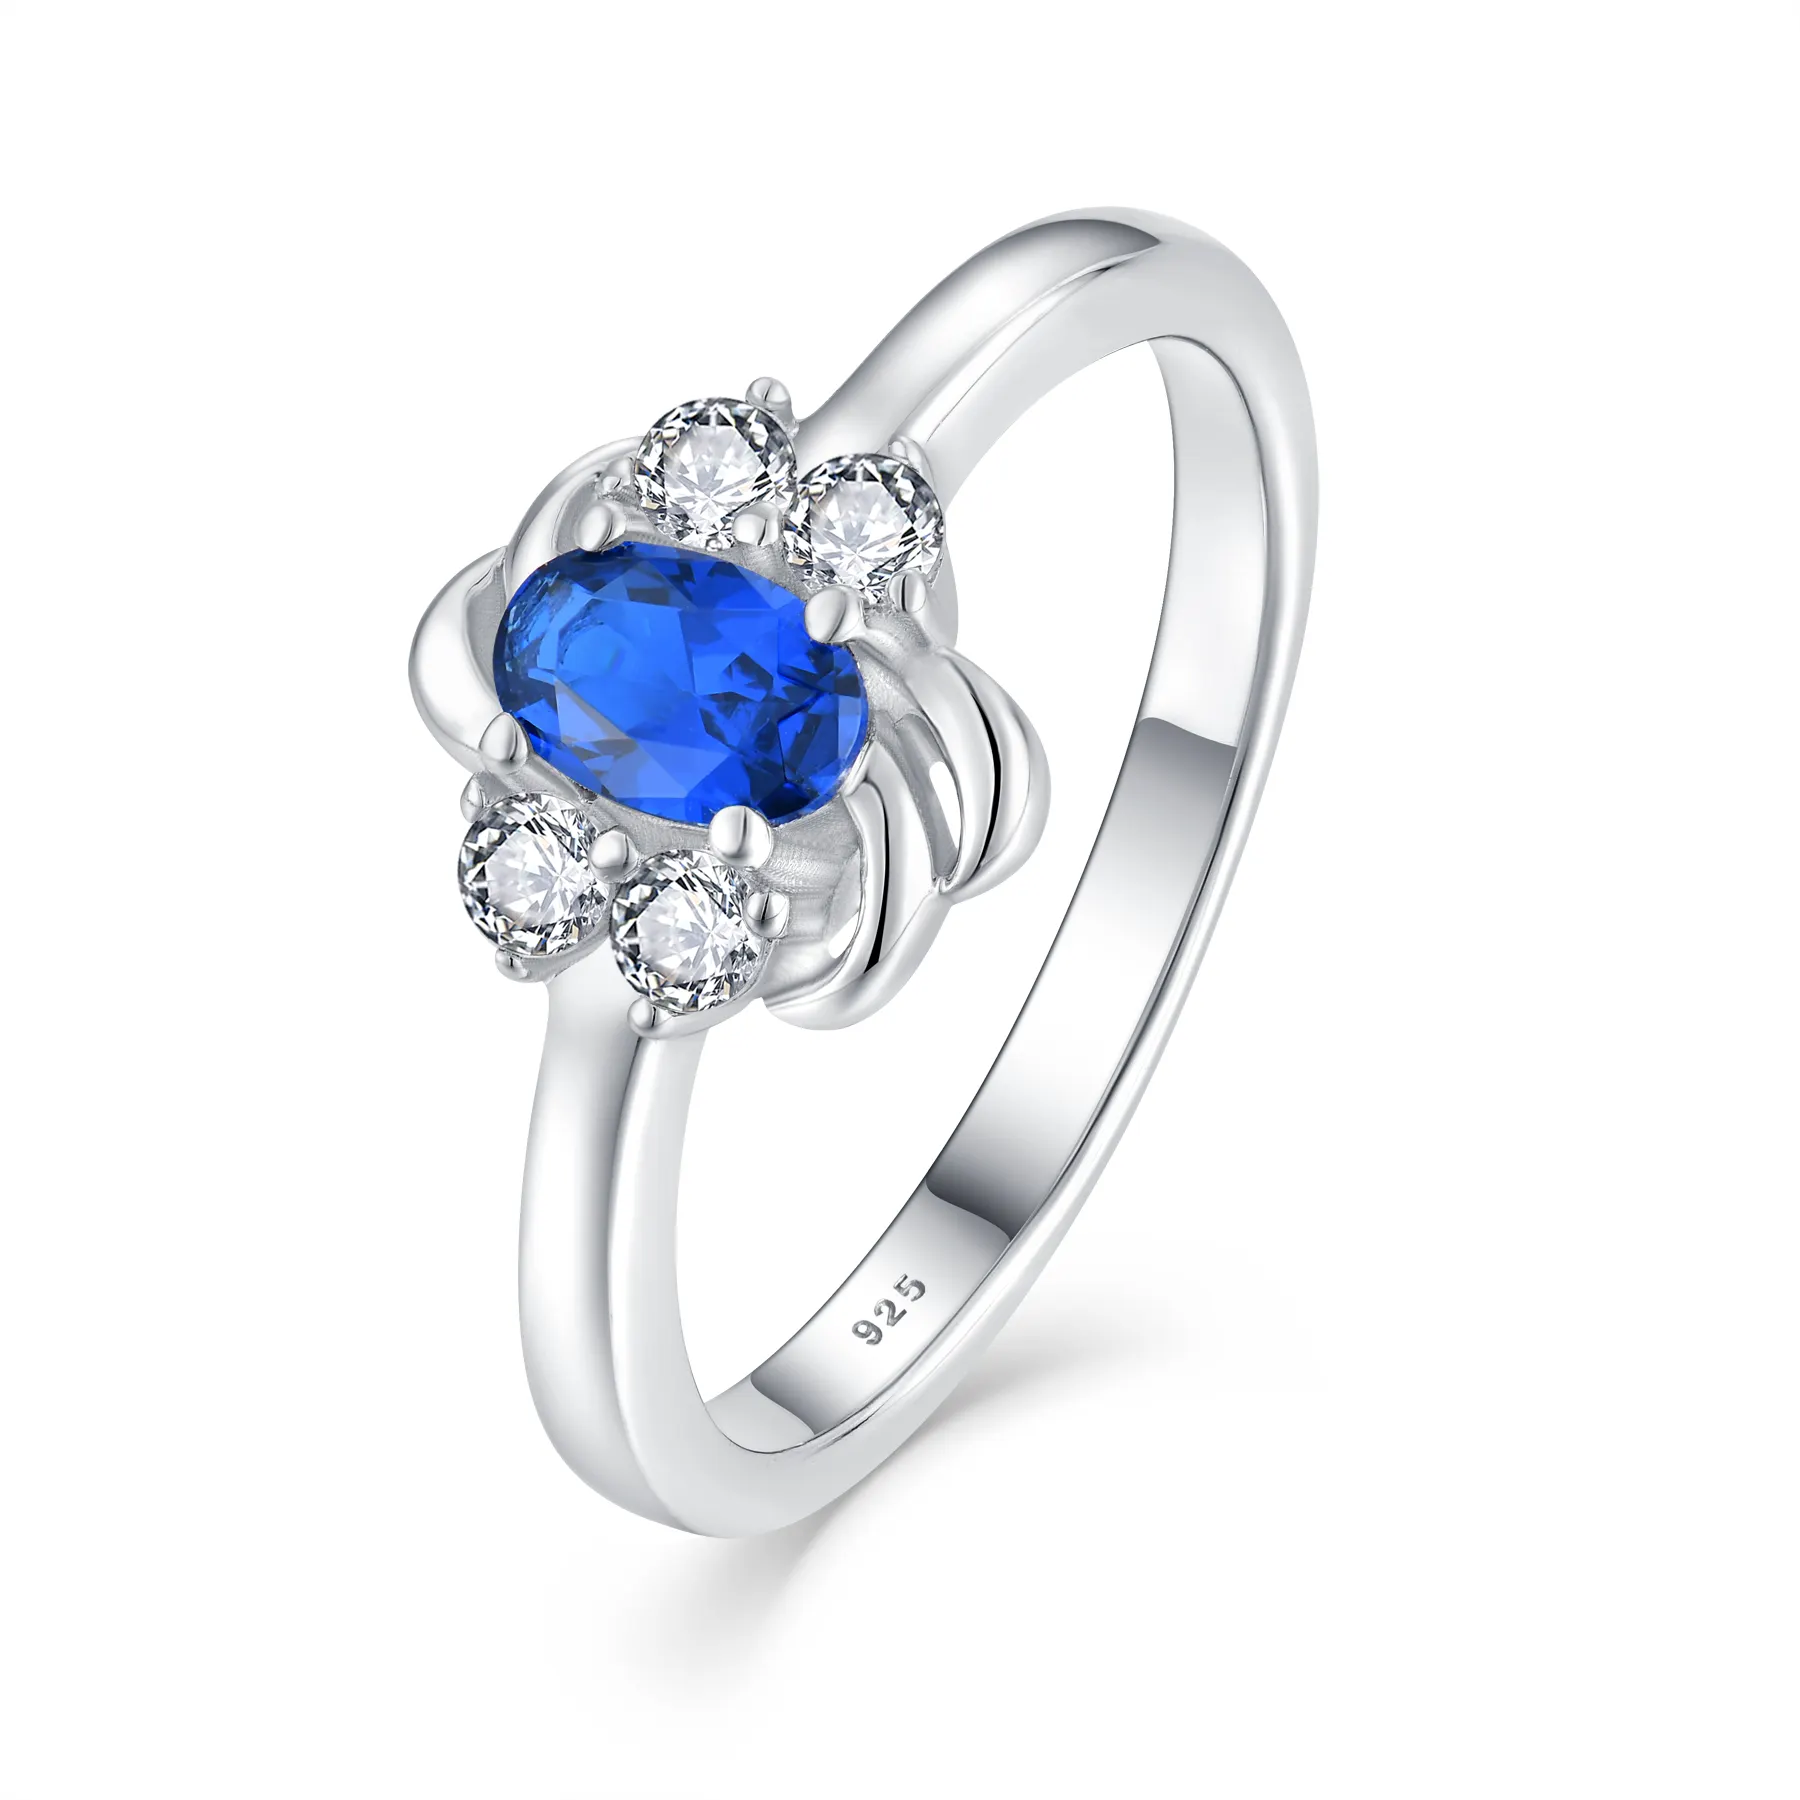 Produk baru bentuk pir mewah cincin zirkon perhiasan halus cincin safir berjemur lapis perak klasik 925 perak murni